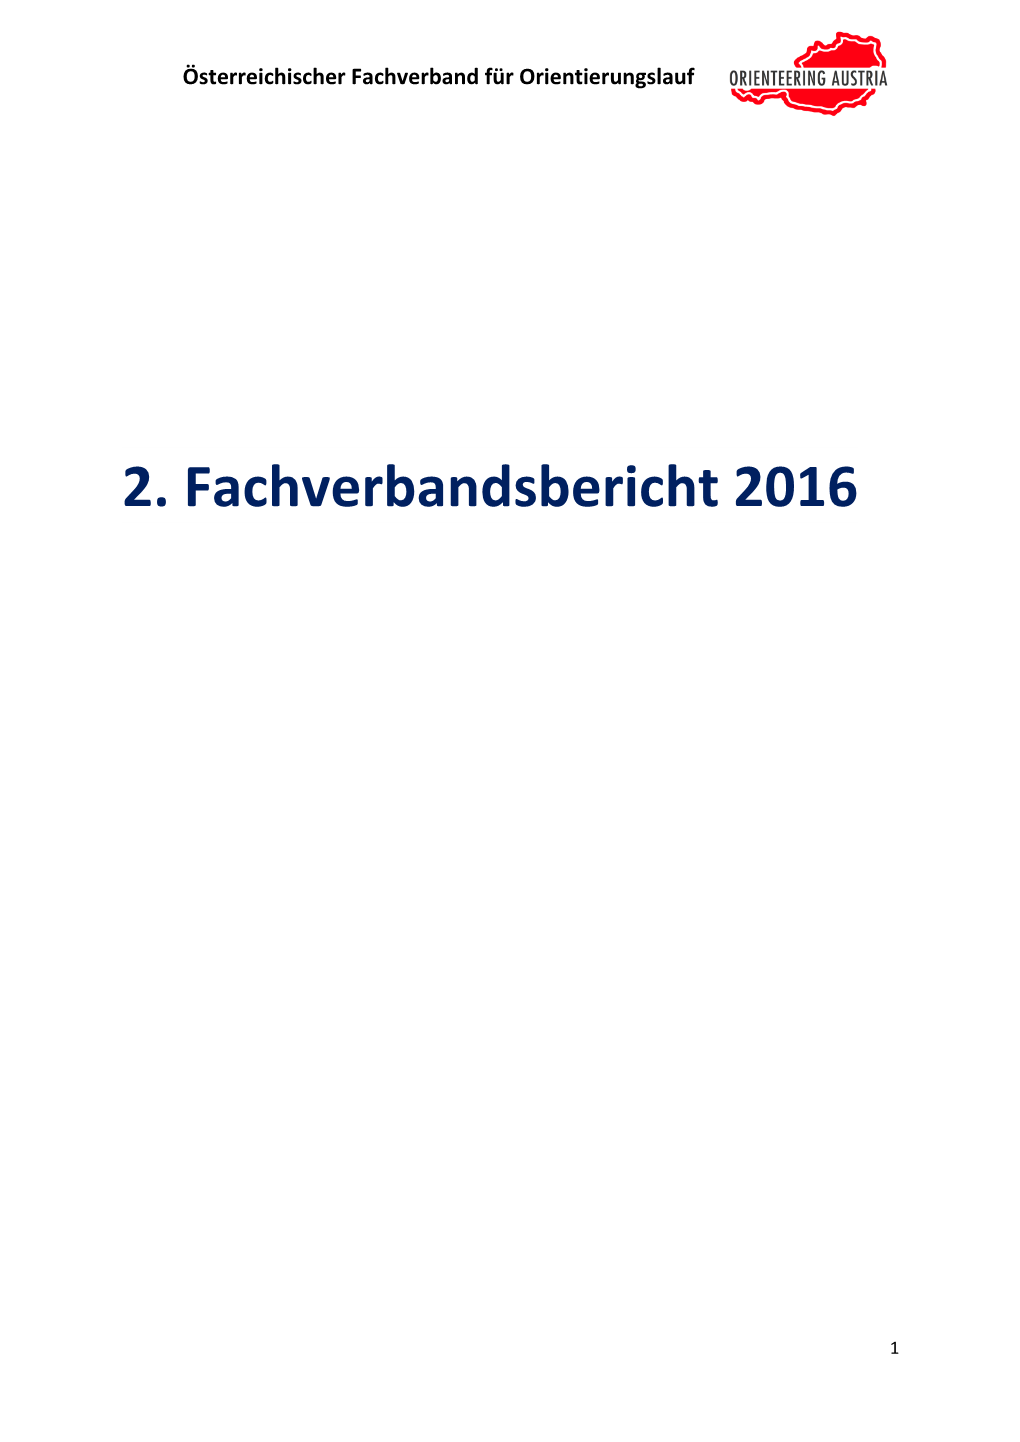 Verbandsbericht 2016/2